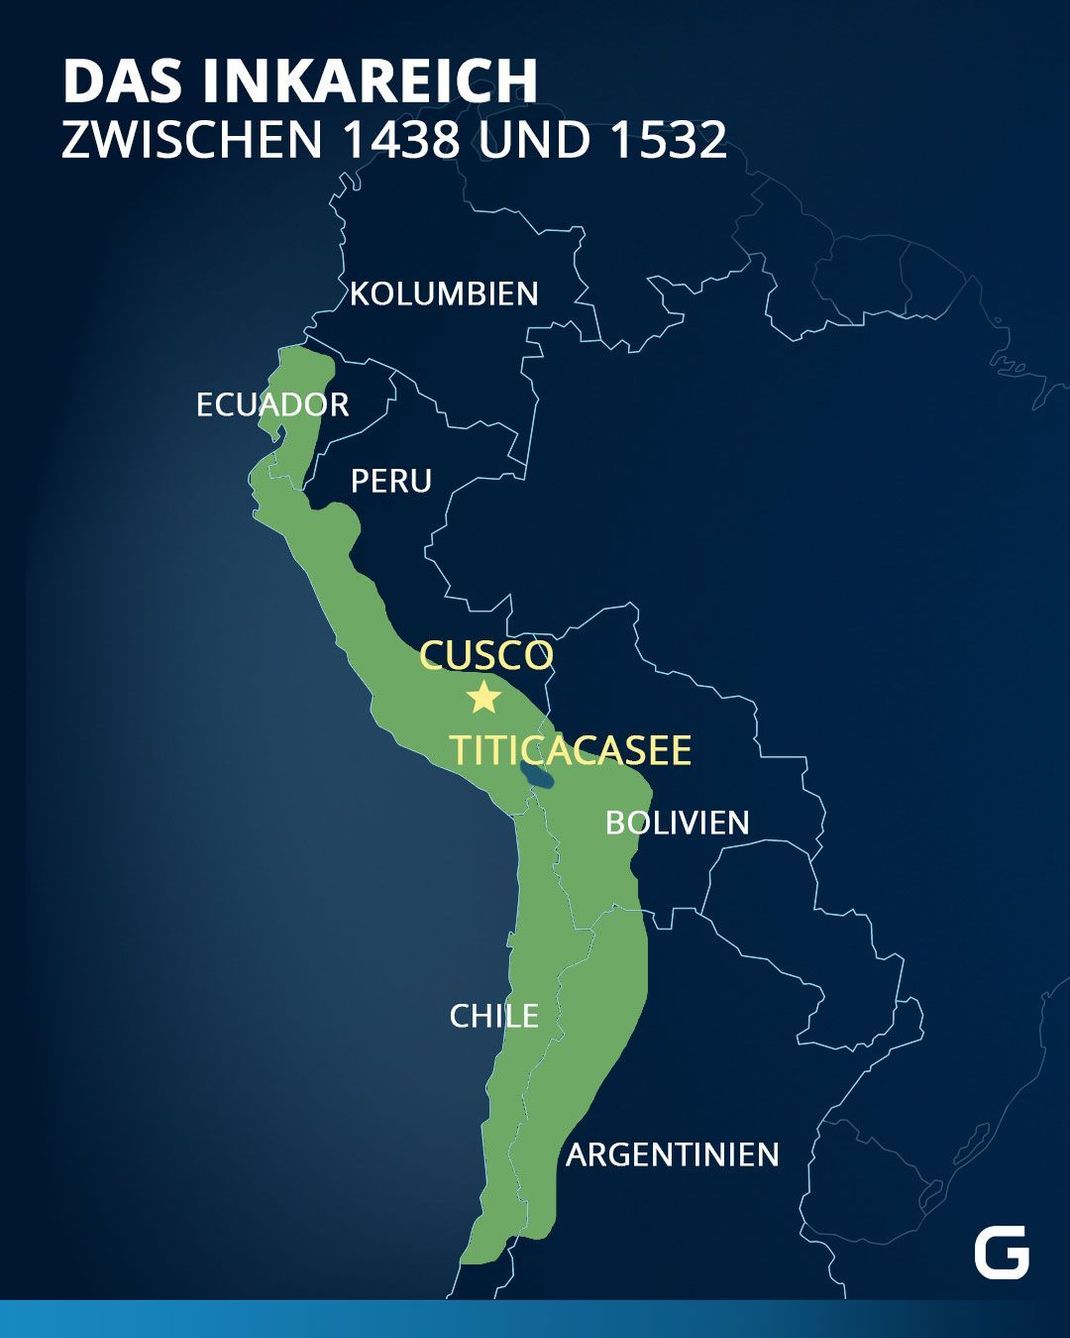 Ausbreitung des Inkareichs zwischen den Jahren 1438 und 1532